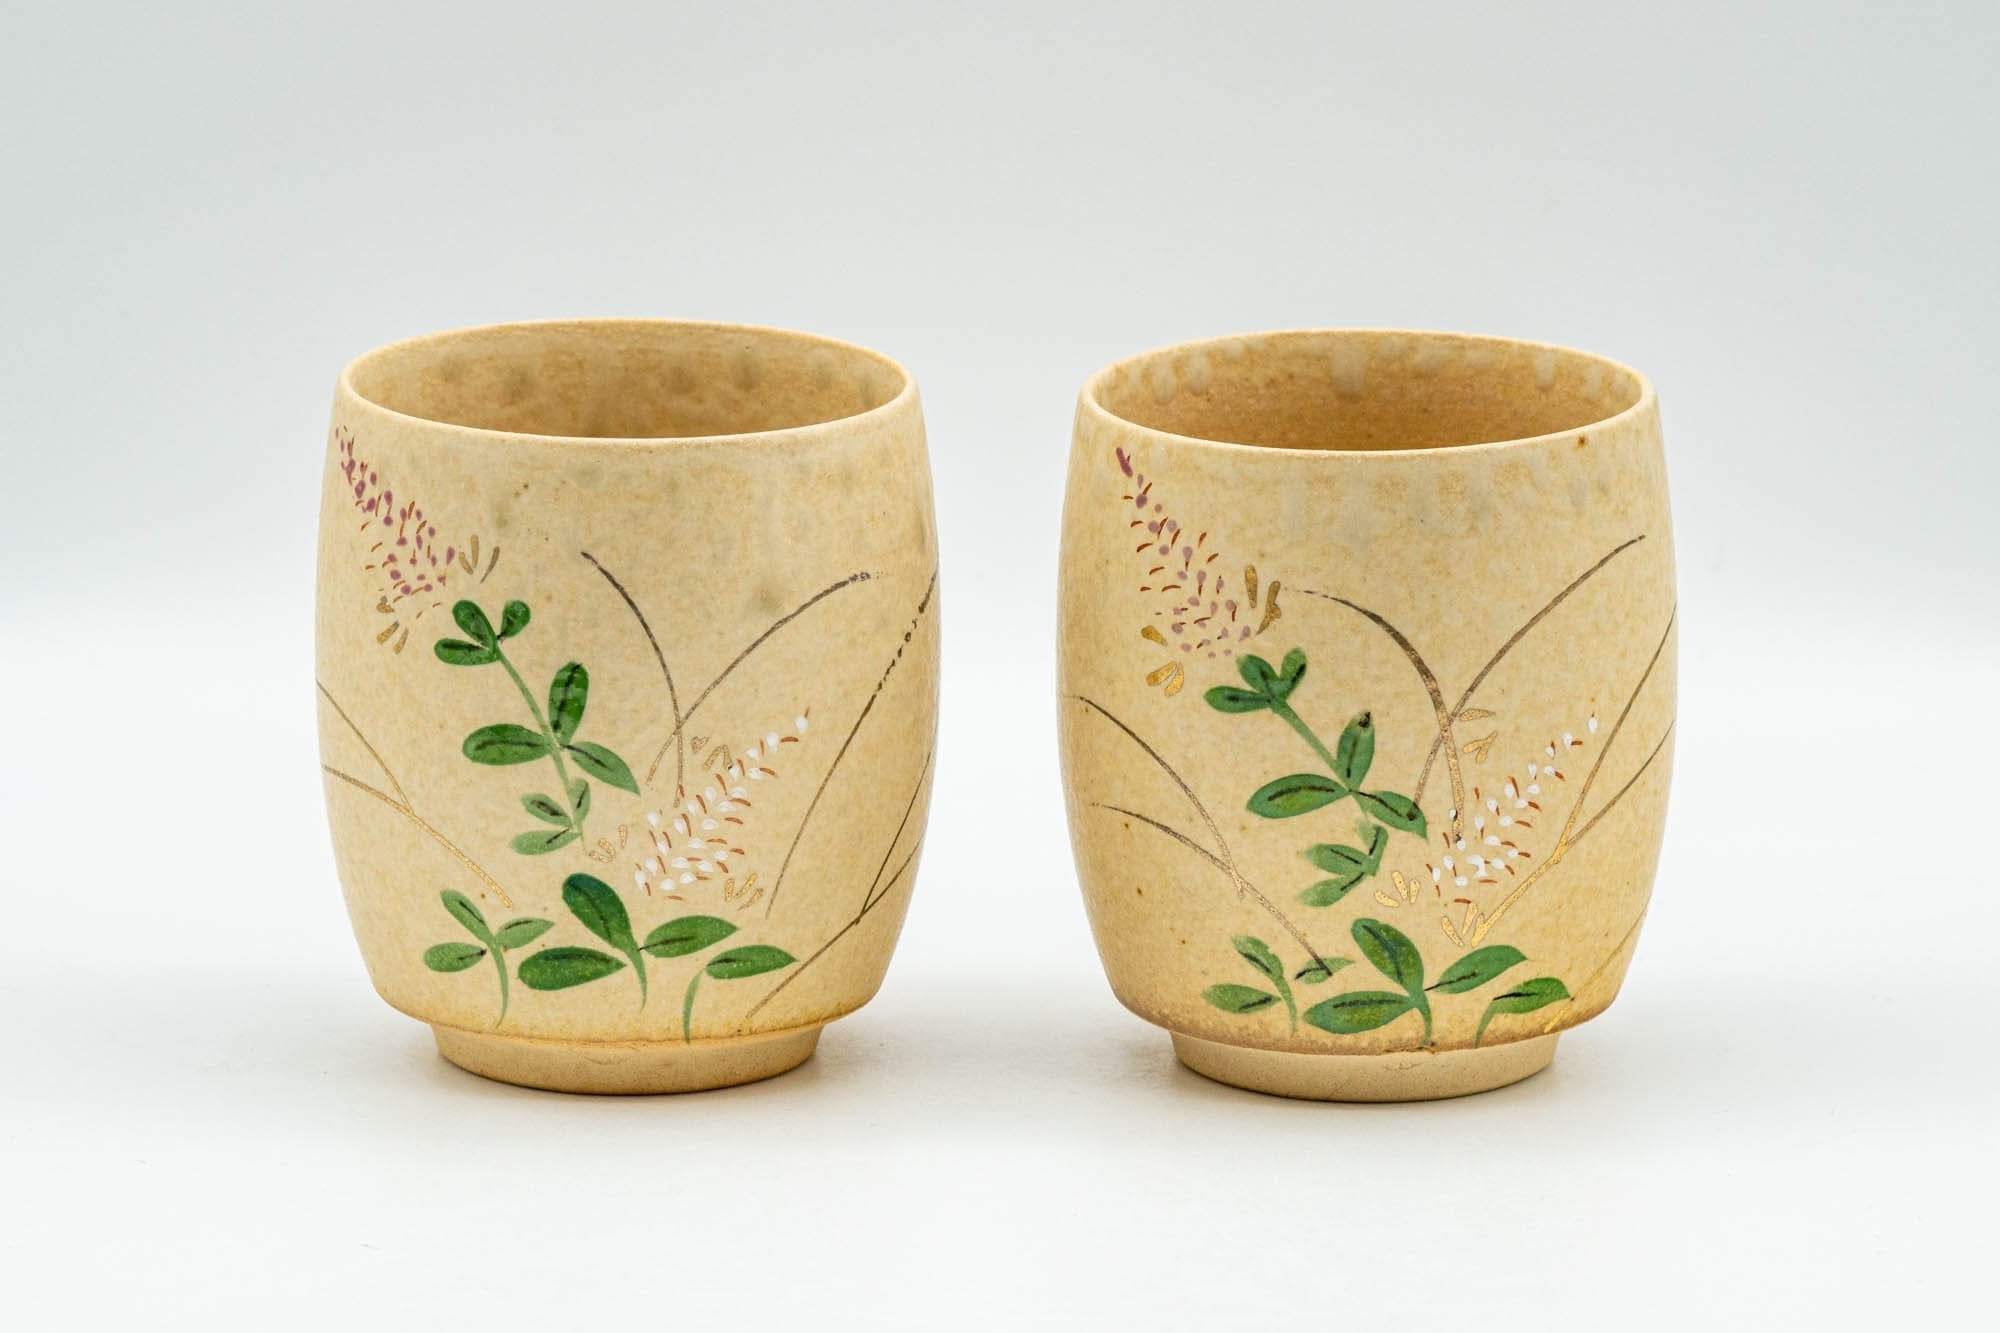 Japanese Tea Set - Floral Beige Glazed Debeso Dobin Teapot and 2 Yunomi Teacups